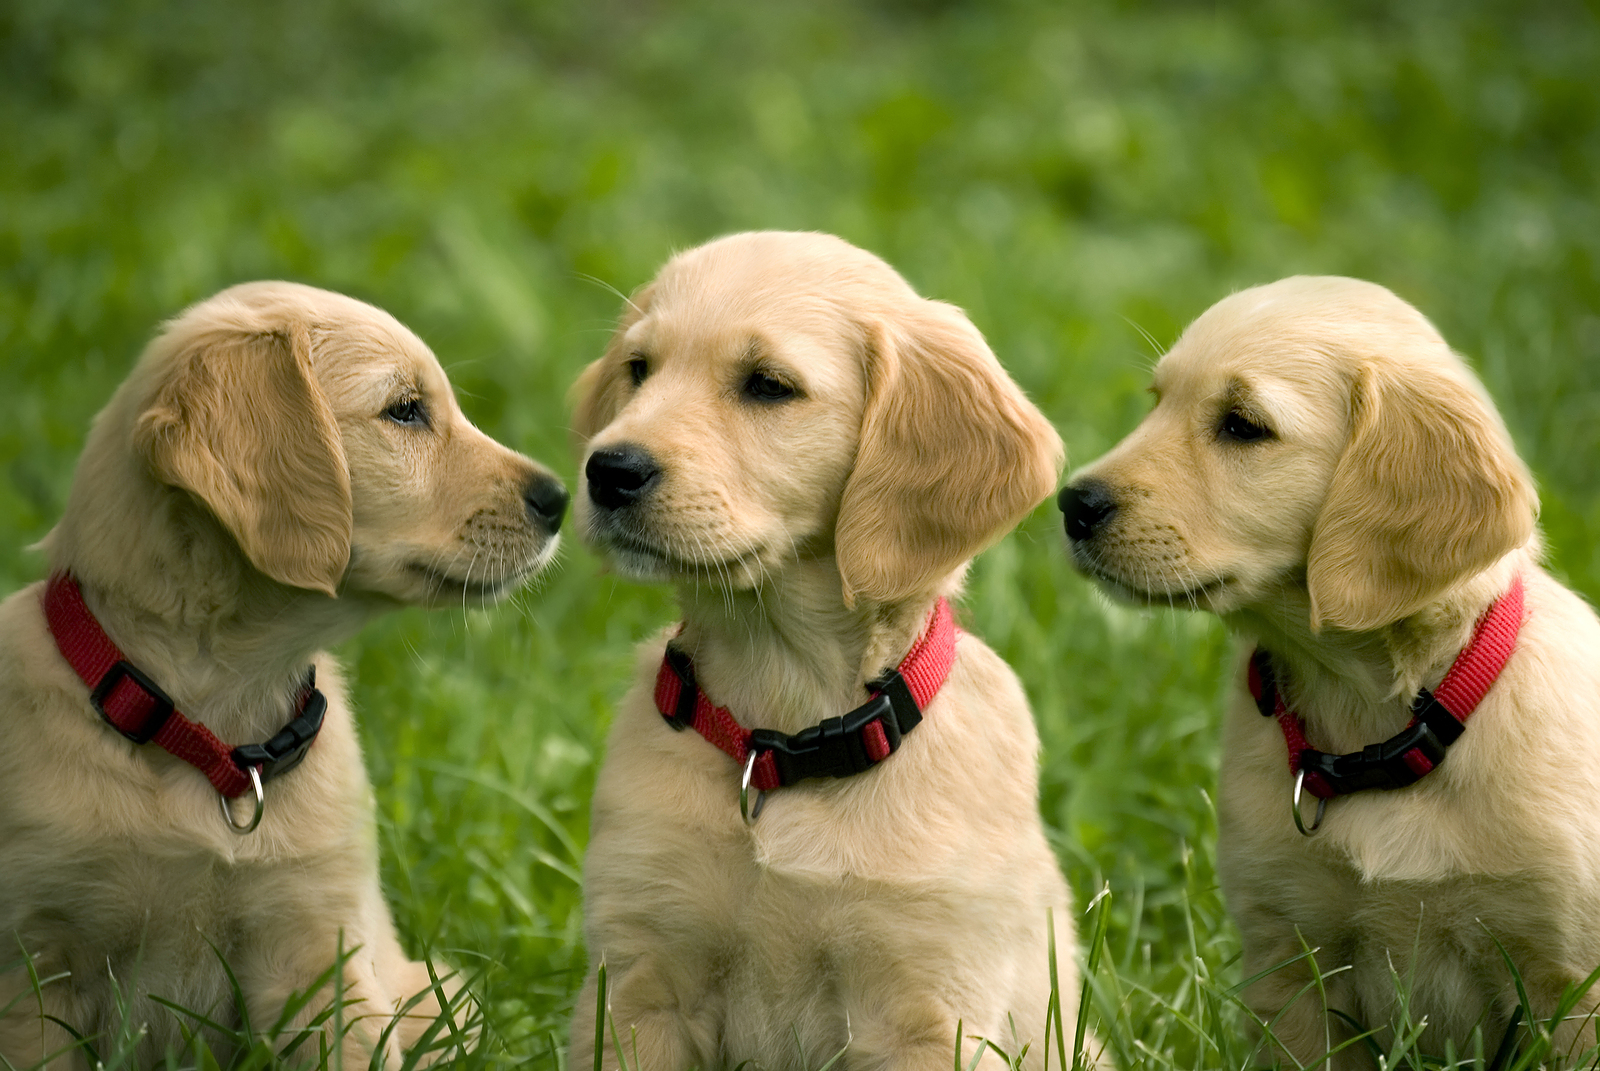 three puppies